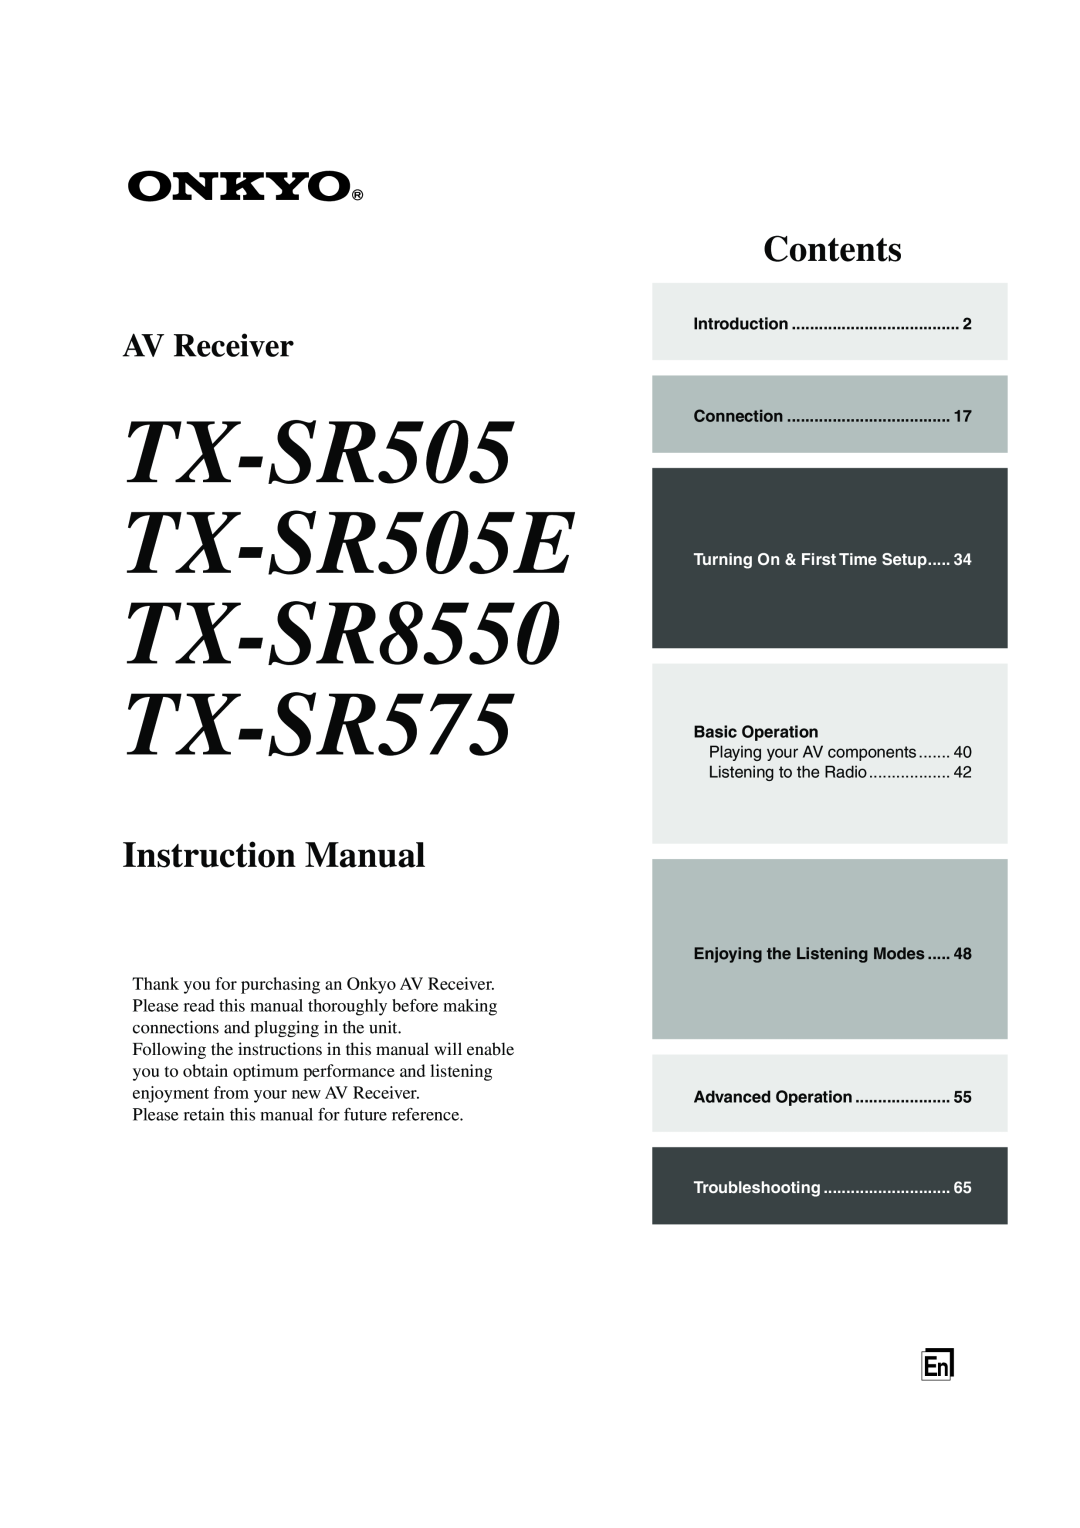 Onkyo instruction manual TX-SR505 TX-SR505E TX-SR8550 TX-SR575, Instruction Manual, Contents, AV Receiver 